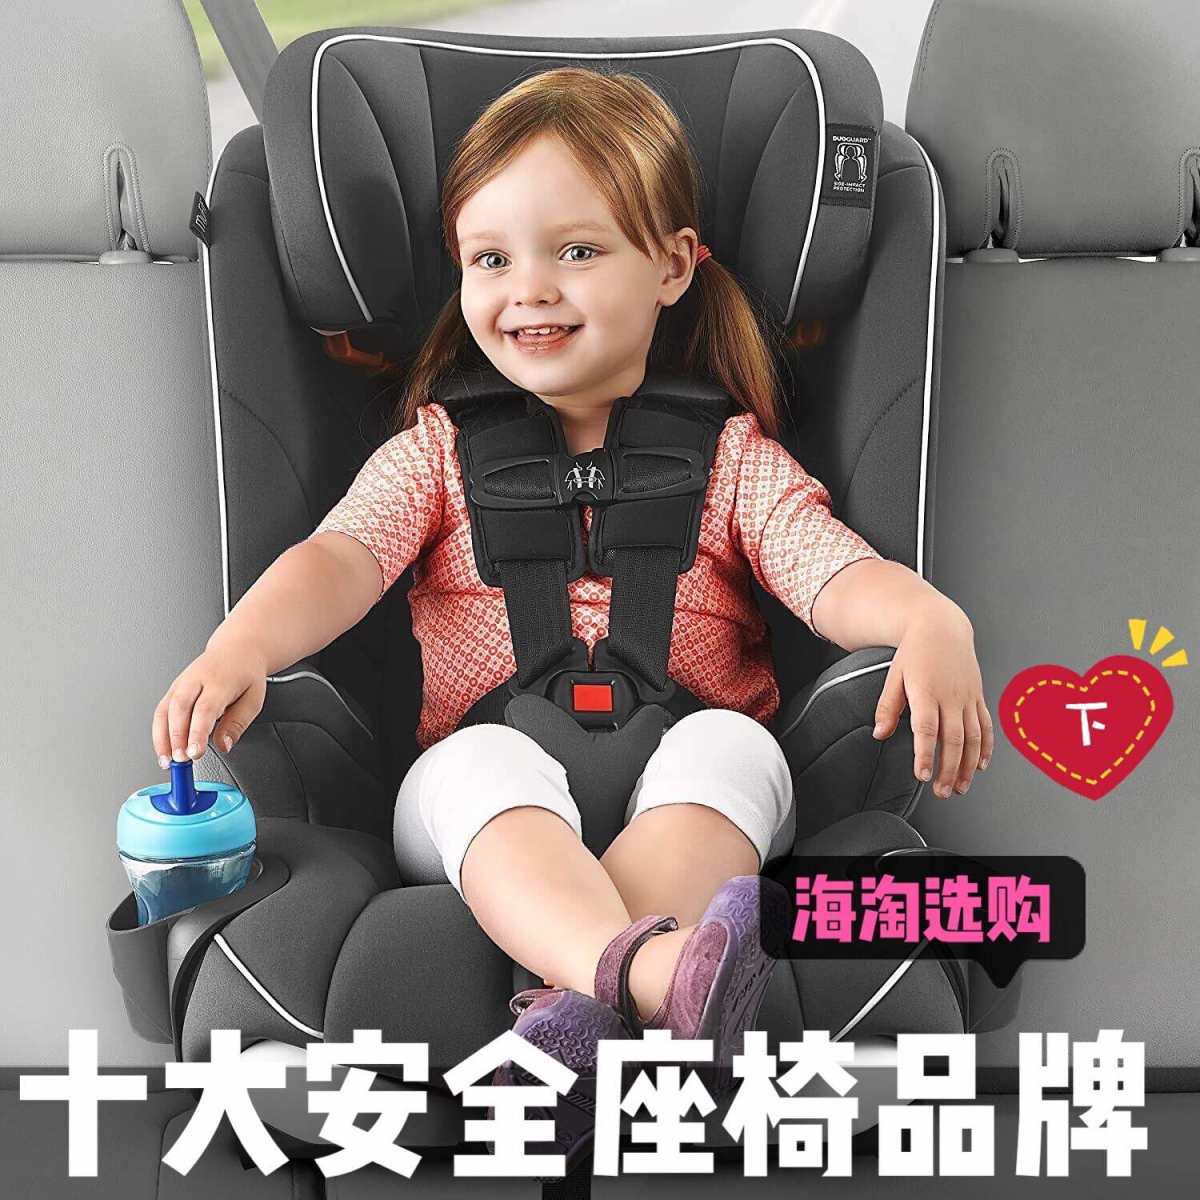 海淘婴儿安全座椅十大品牌推荐（上）  ☪☪☪☪☪☪☪☪ 随着